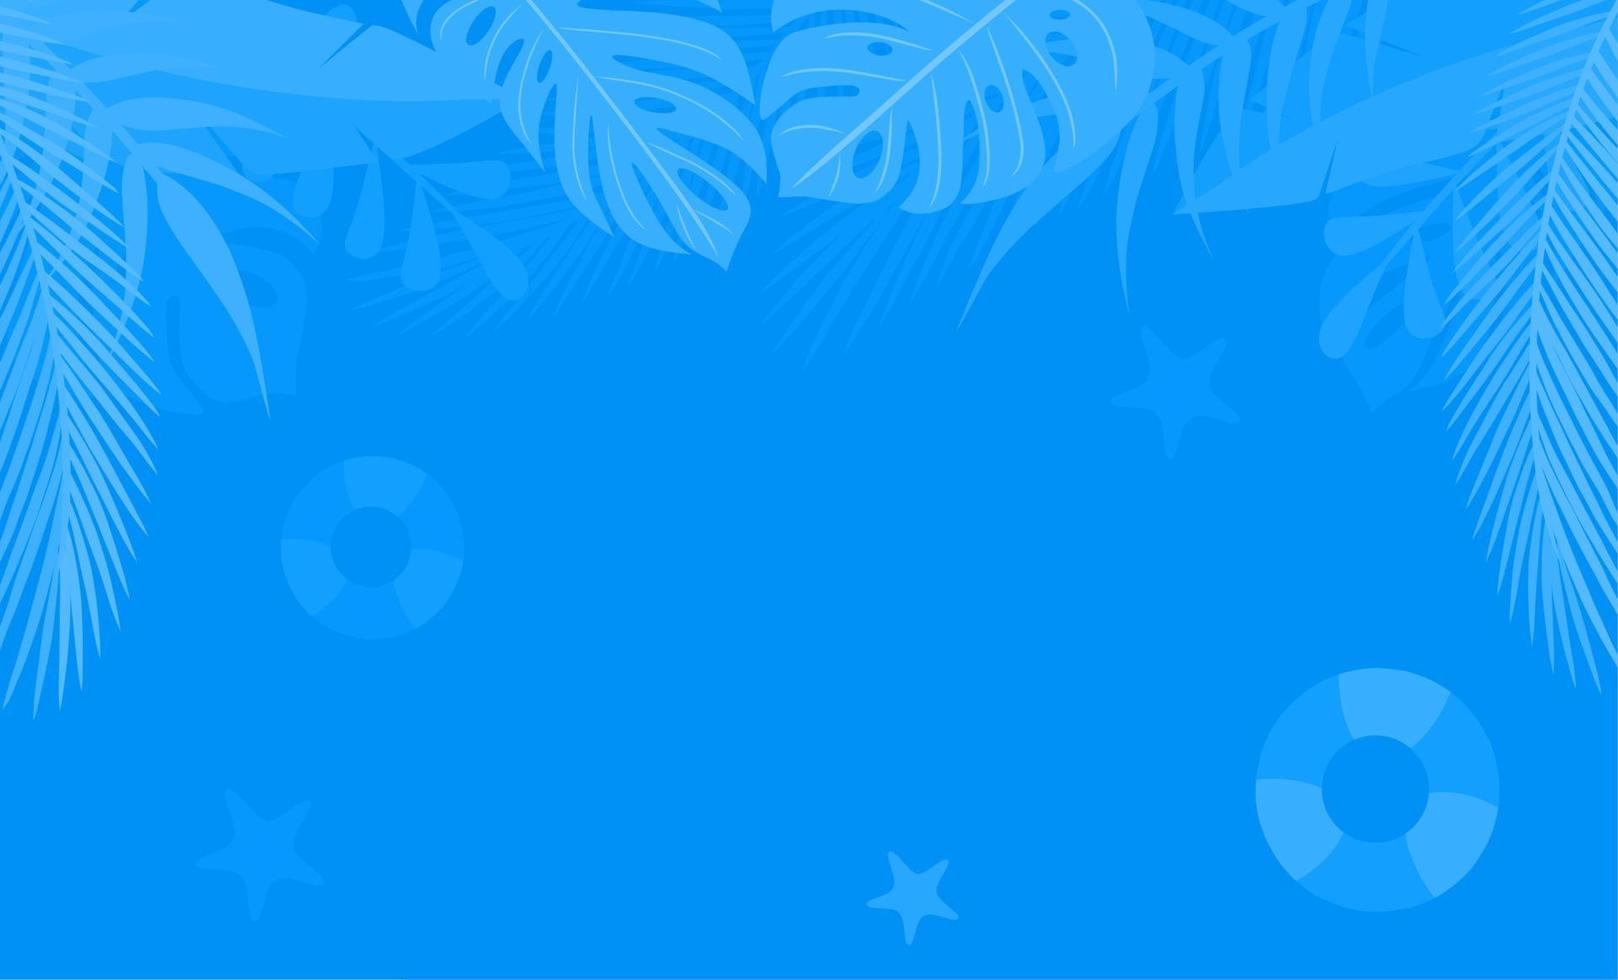 abstrakter blauer flacher hintergrund. blaues tropisches pflanzenmusterdesign. saisonaler hintergrund mit kopierraum. Vektor-Illustration vektor